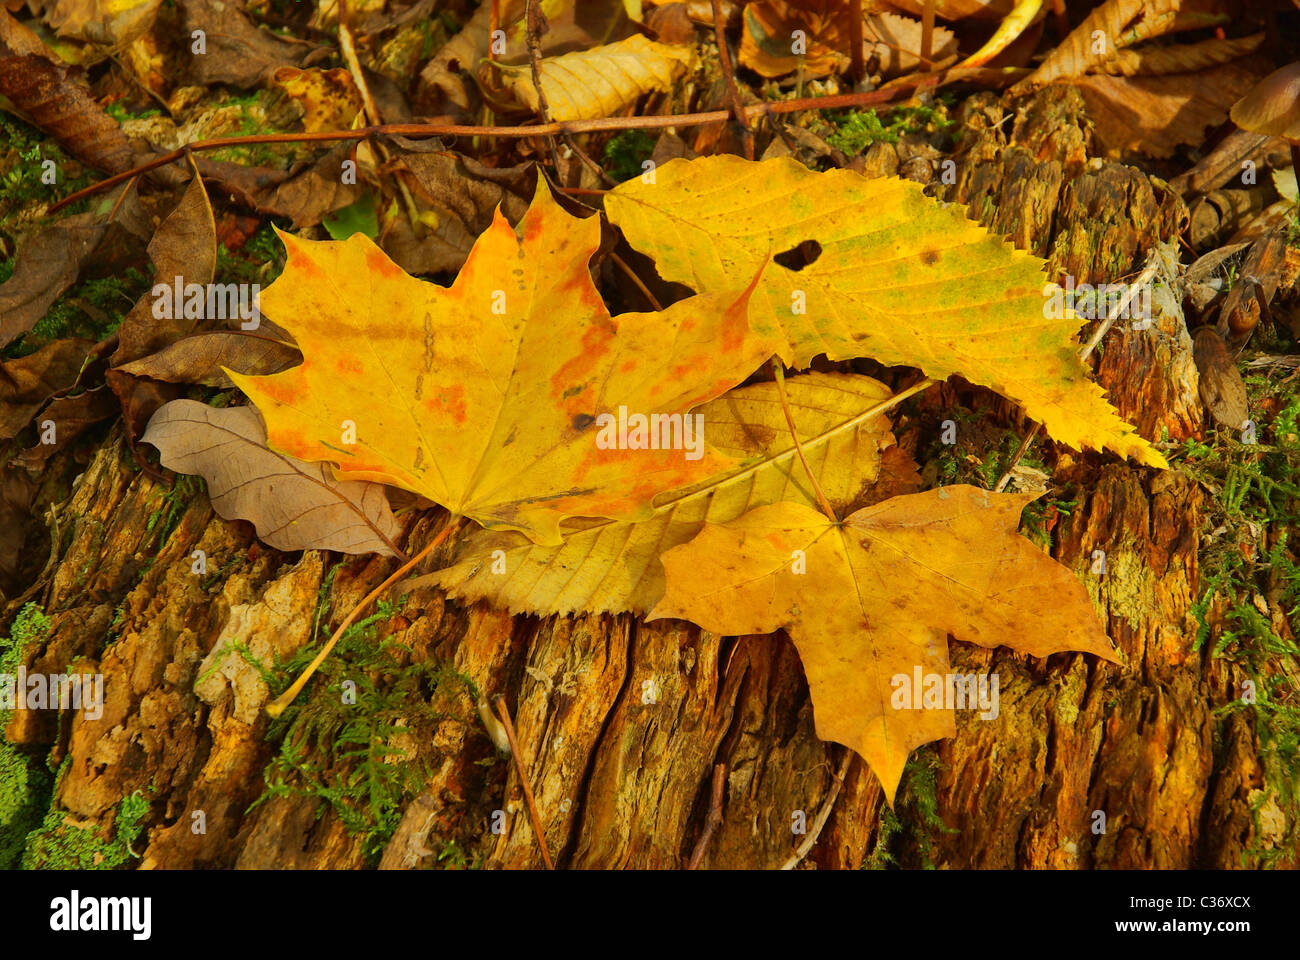 Ahornblatt - maple leaf 10 Stock Photo - Alamy